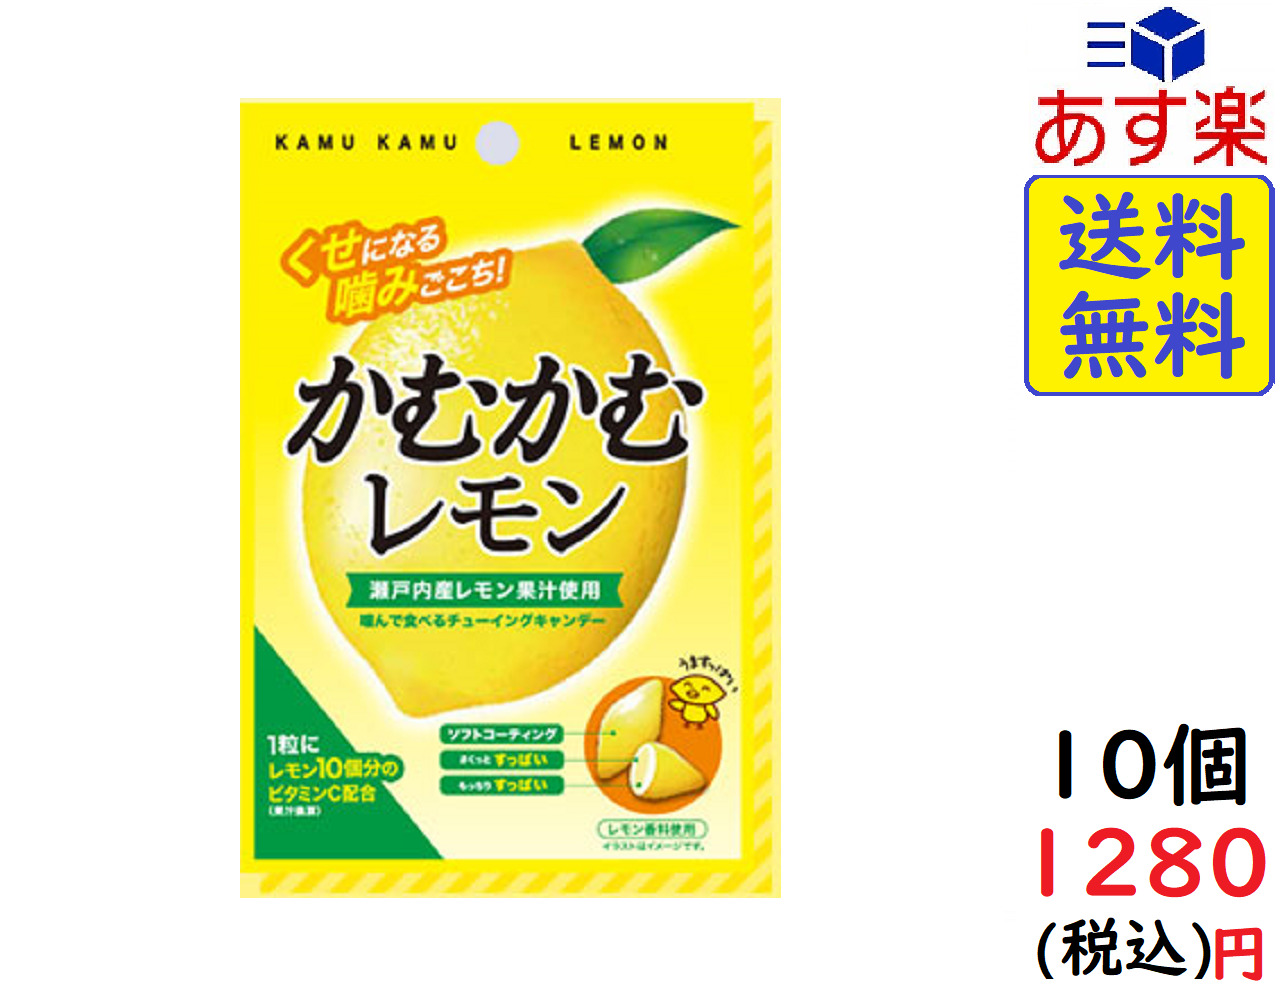 三菱食品 かむかむ レモン 30g ×10個 賞味期限2023 03